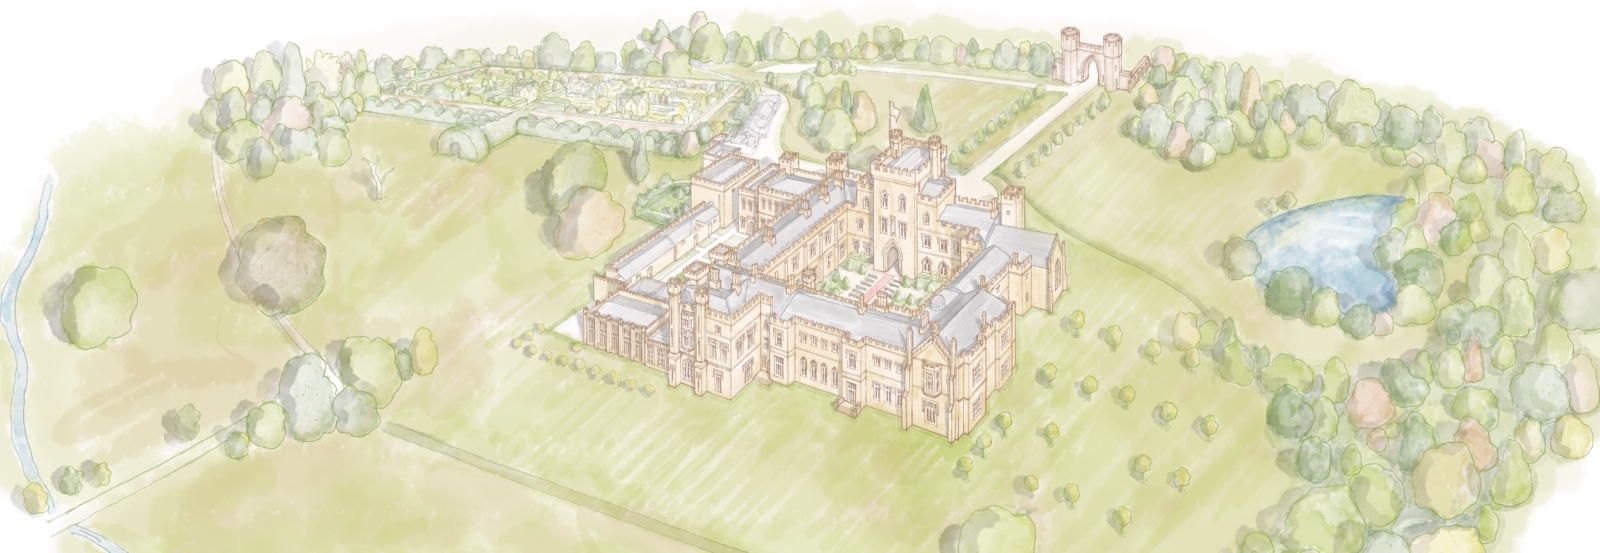 Hampton Court Castle grounds